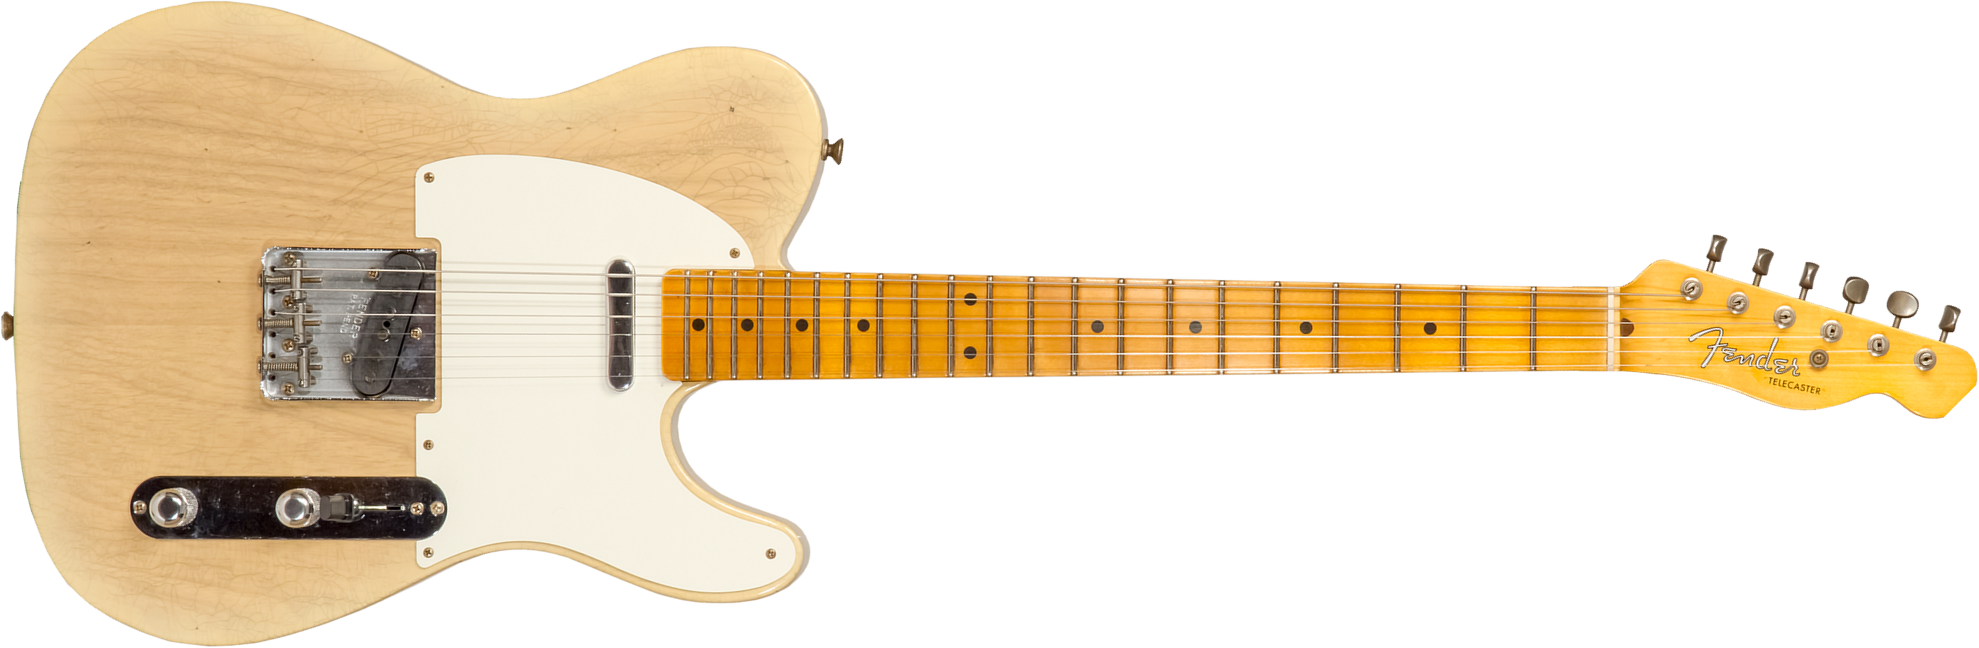 Fender Custom Shop Tele 1955 2s Ht Mn #cz570232 - Journeyman Relic Natural Blonde - Guitarra eléctrica con forma de tel - Main picture